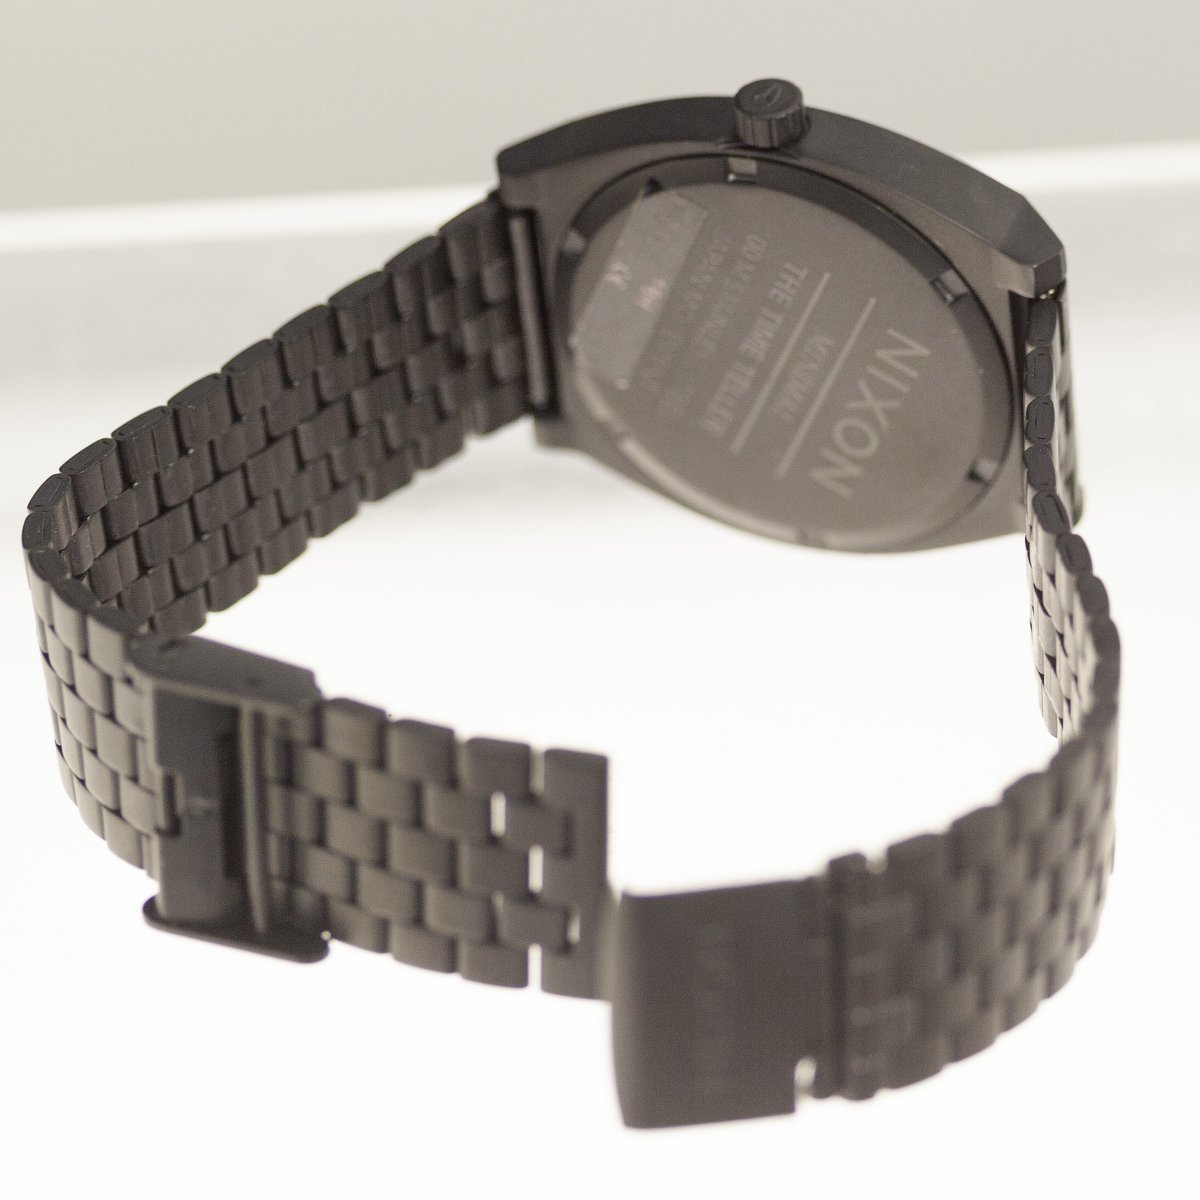  Nixon Mini maru Time Teller наручные часы нержавеющая сталь NIXON MINIMAL THE TIME TELLER кварц б/у рабочий товар 